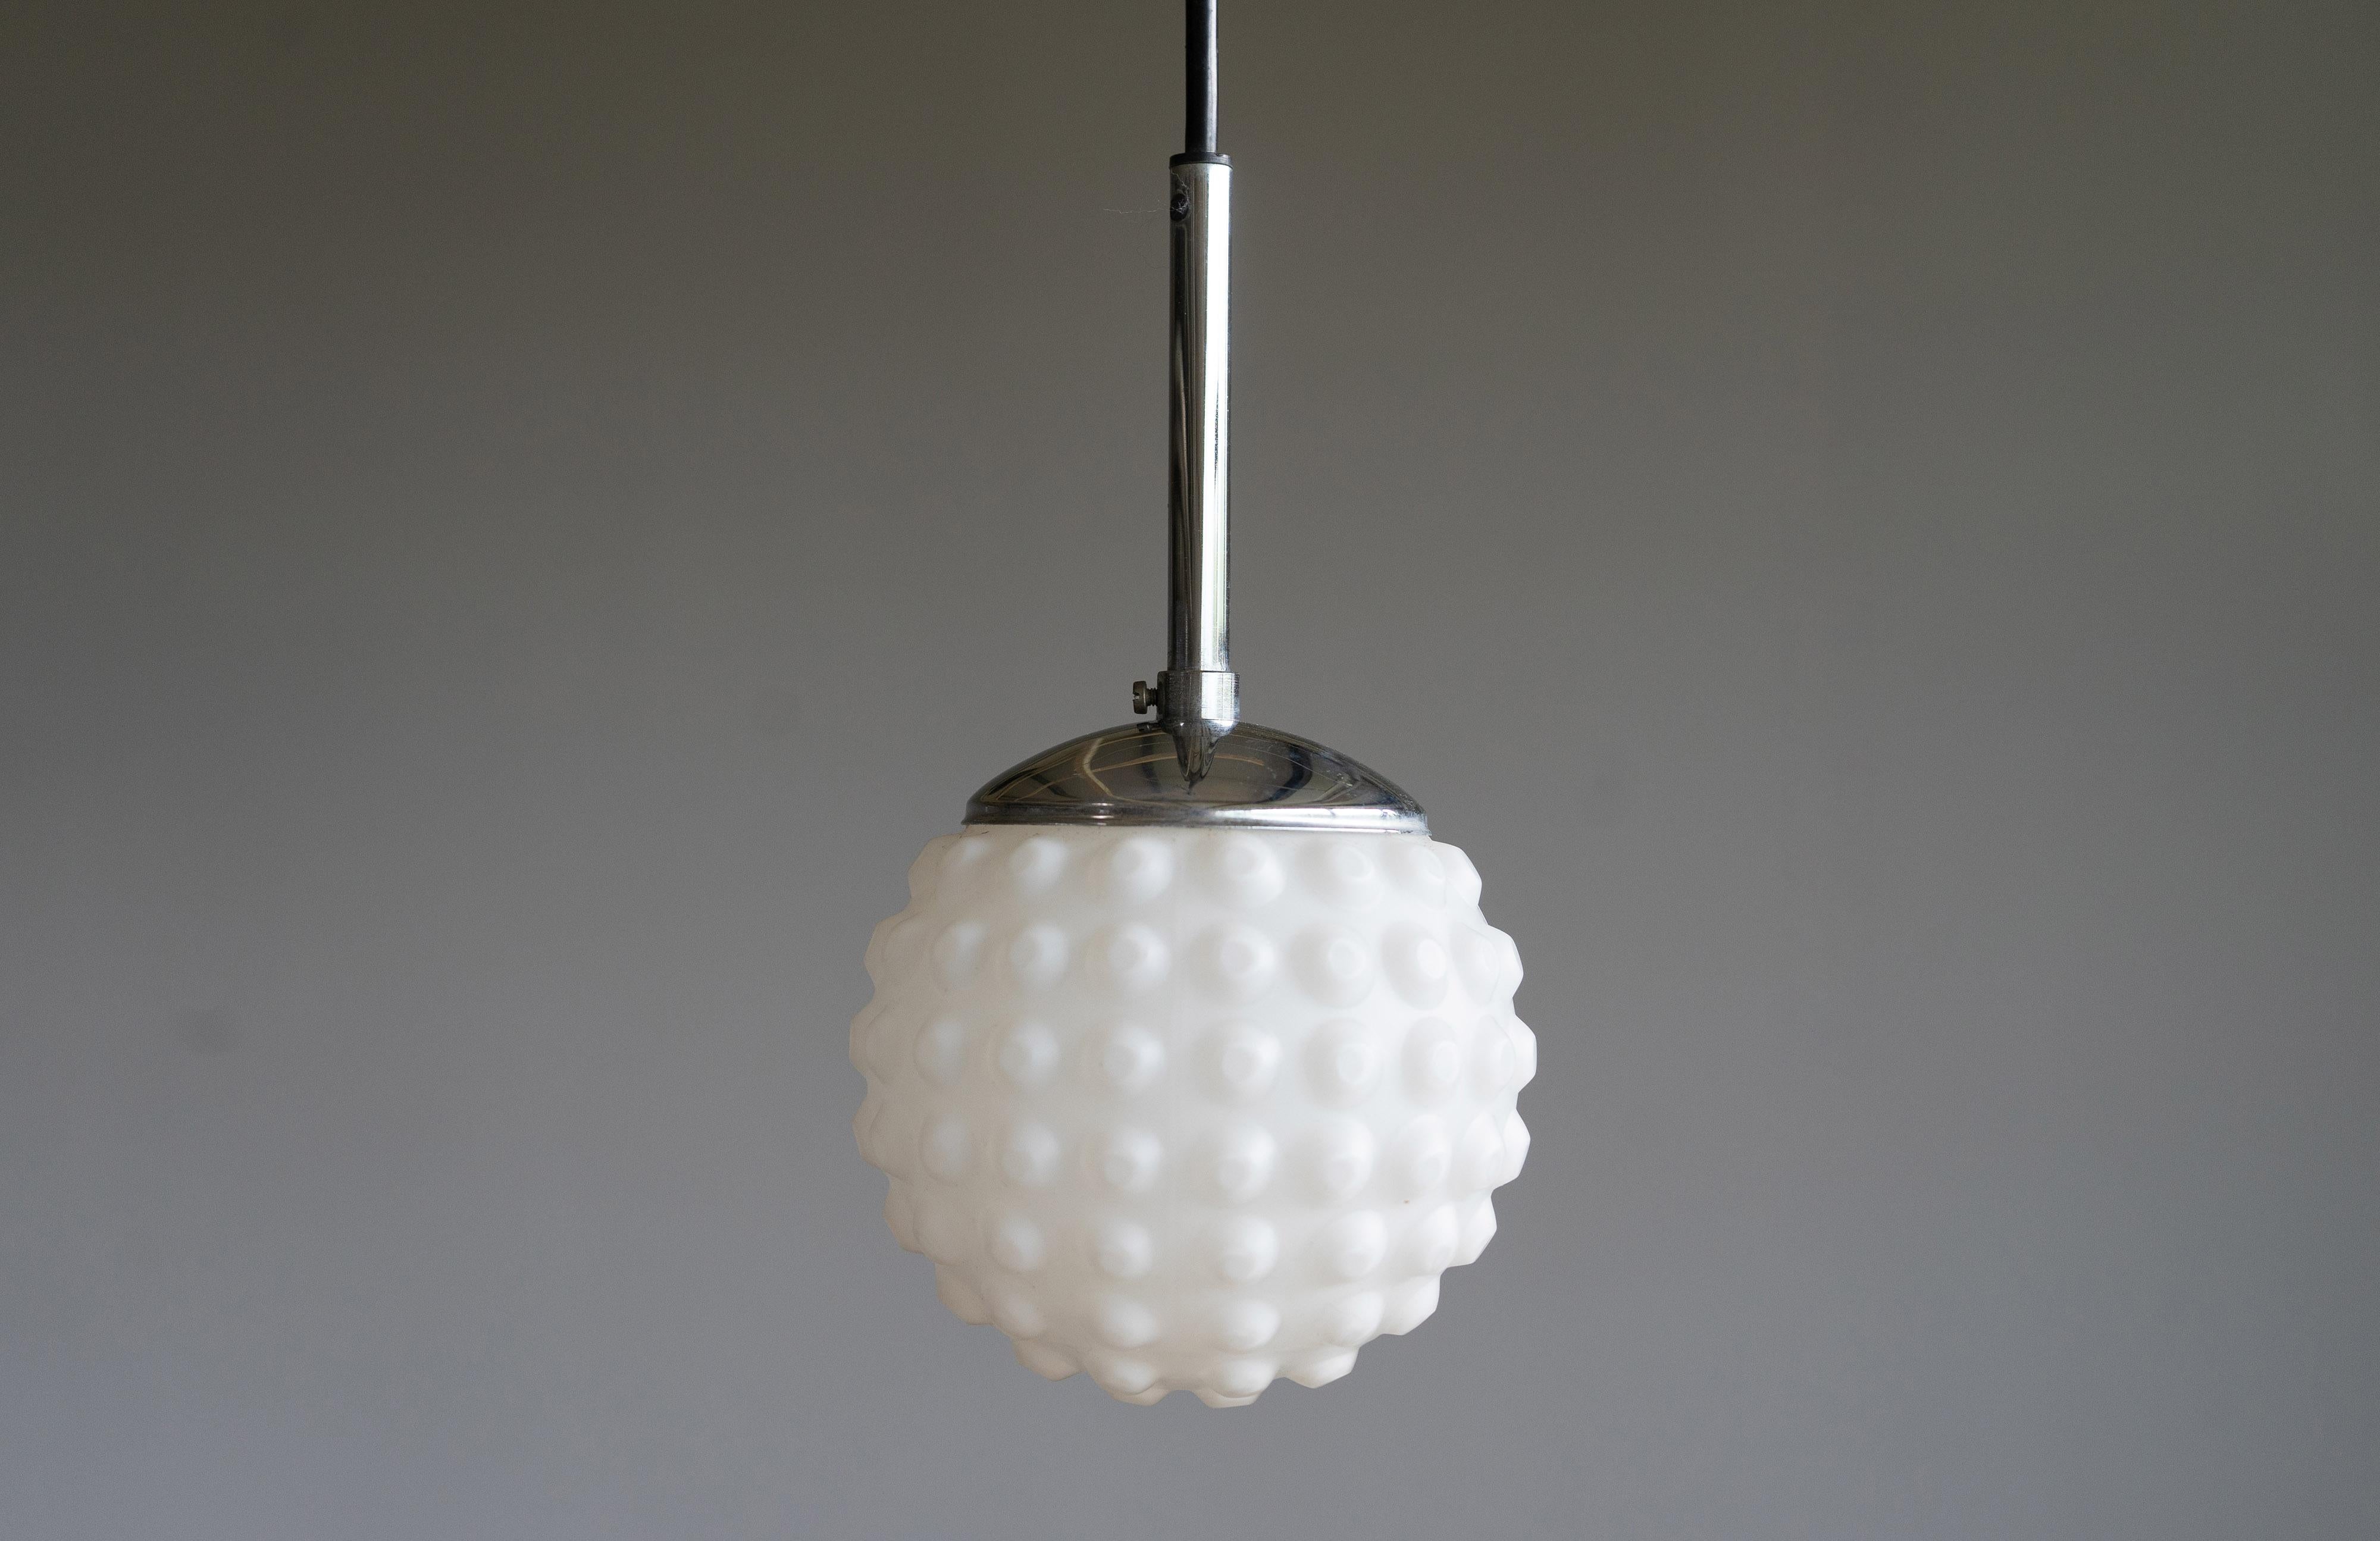 Une des vingt petites lampes globe en verre opalin vintage, modèle p117 de Staff-Light, conçu par Rolf Krüger. Les lampes sont conçues pour des prises E14 et peuvent être câblées avec un câble noir de la longueur souhaitée en fonction des besoins du